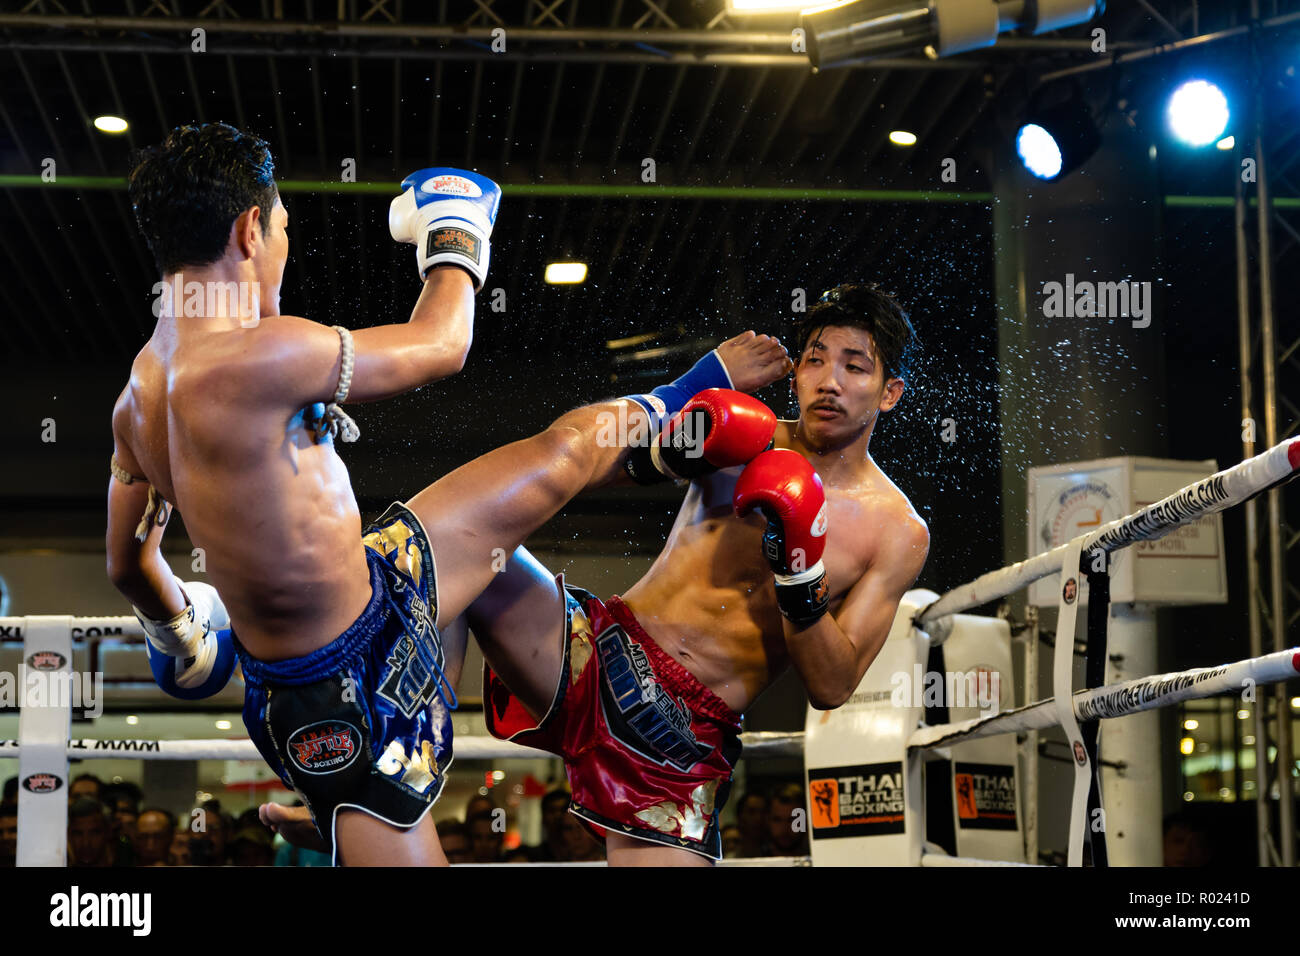 Bangkok, Thailand - October 31, 2018: Bangkok Muay Thai Fights at MBK Center. Stock Photo